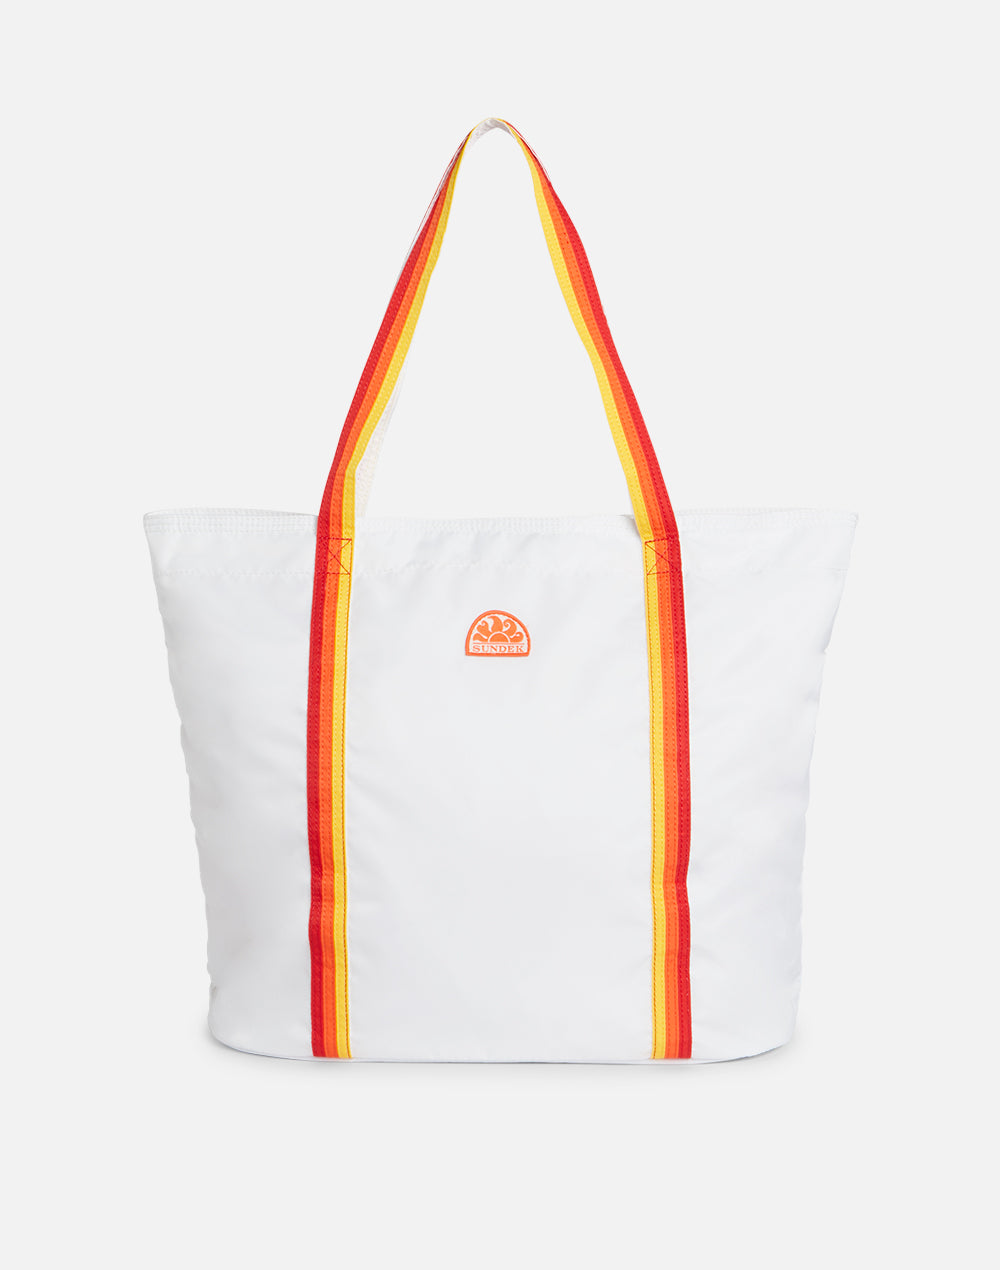 visesunny Hermosa bolsa húmeda de sirena arcoíris de 2 piezas con bolsillos  con cremallera, lavable, reutilizable, espaciosa para viajes, playa